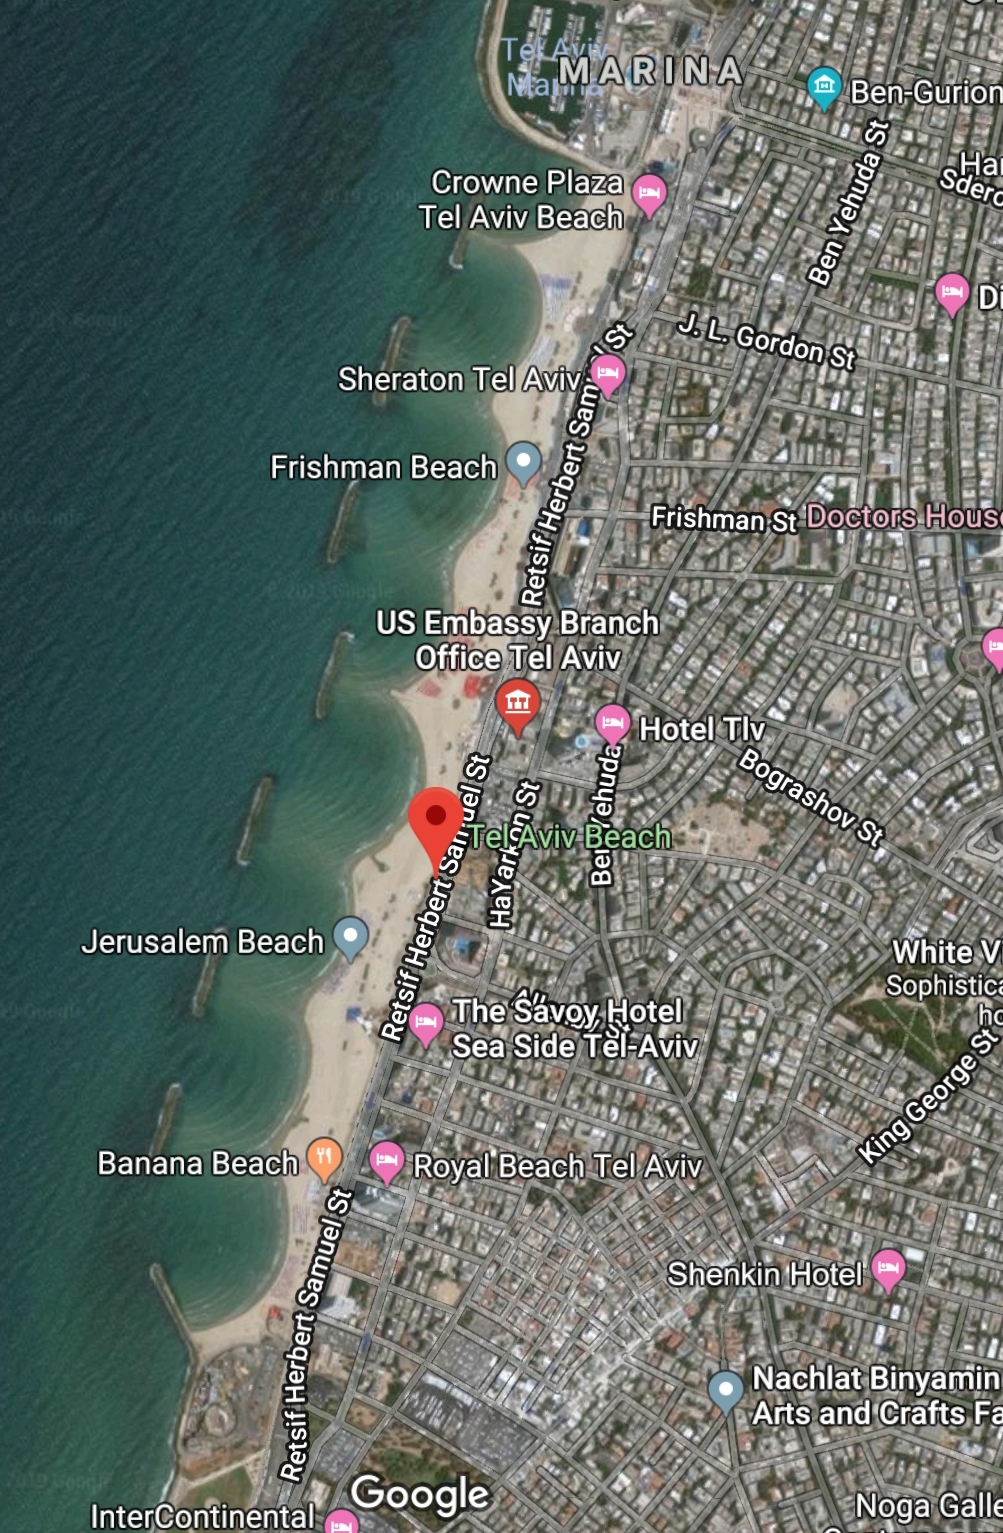 Tel Aviv Beach Map